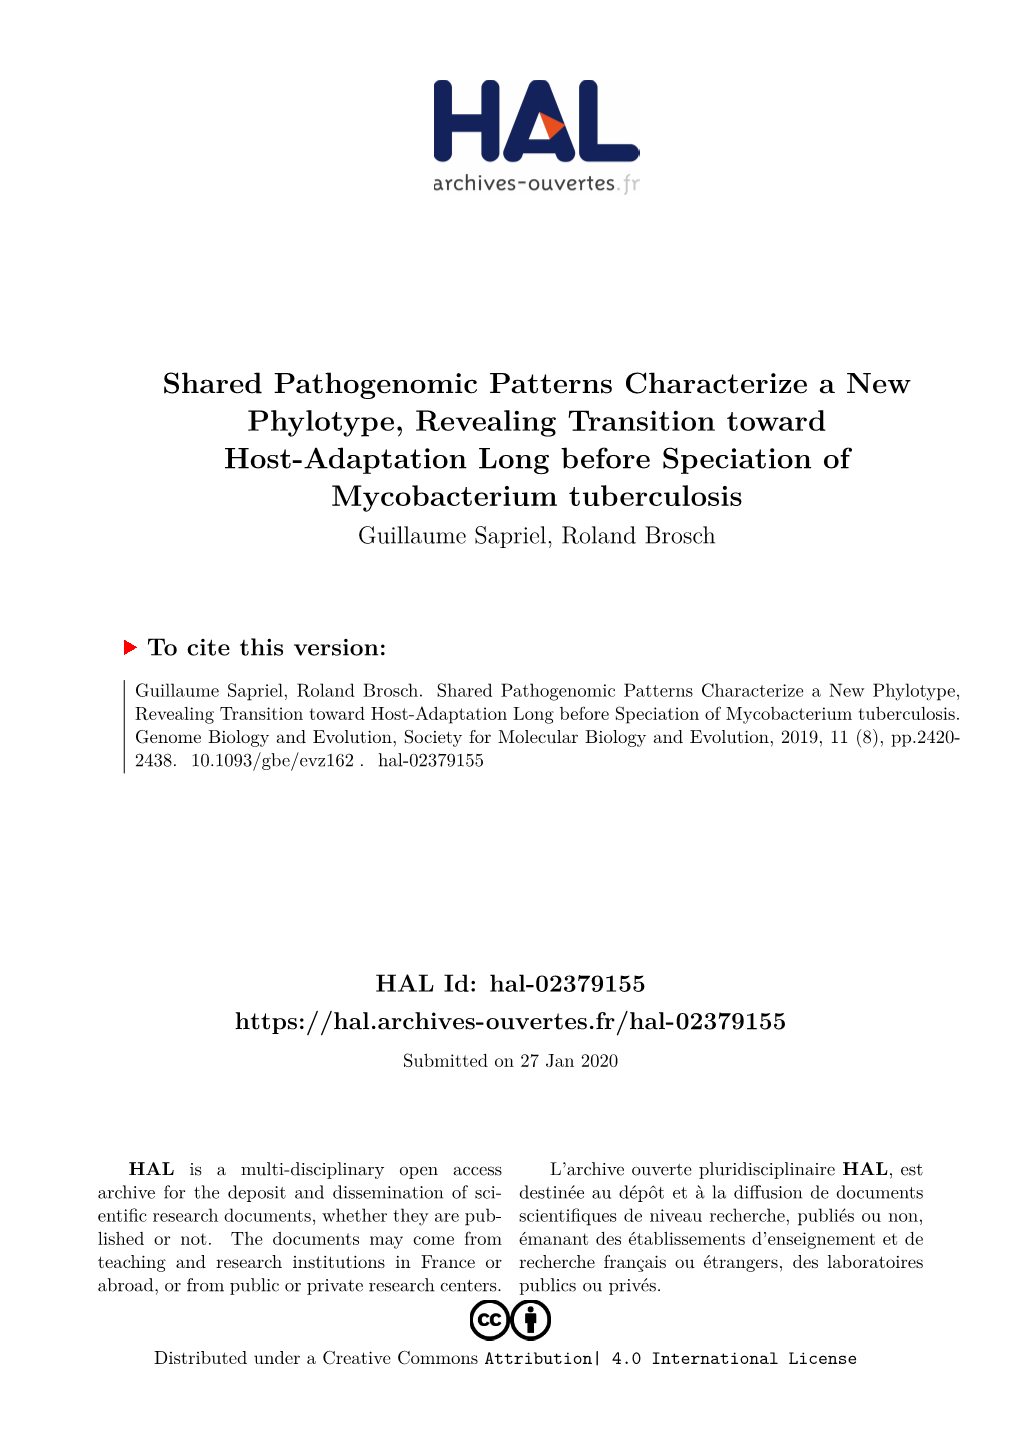 Shared Pathogenomic Patterns Characterize